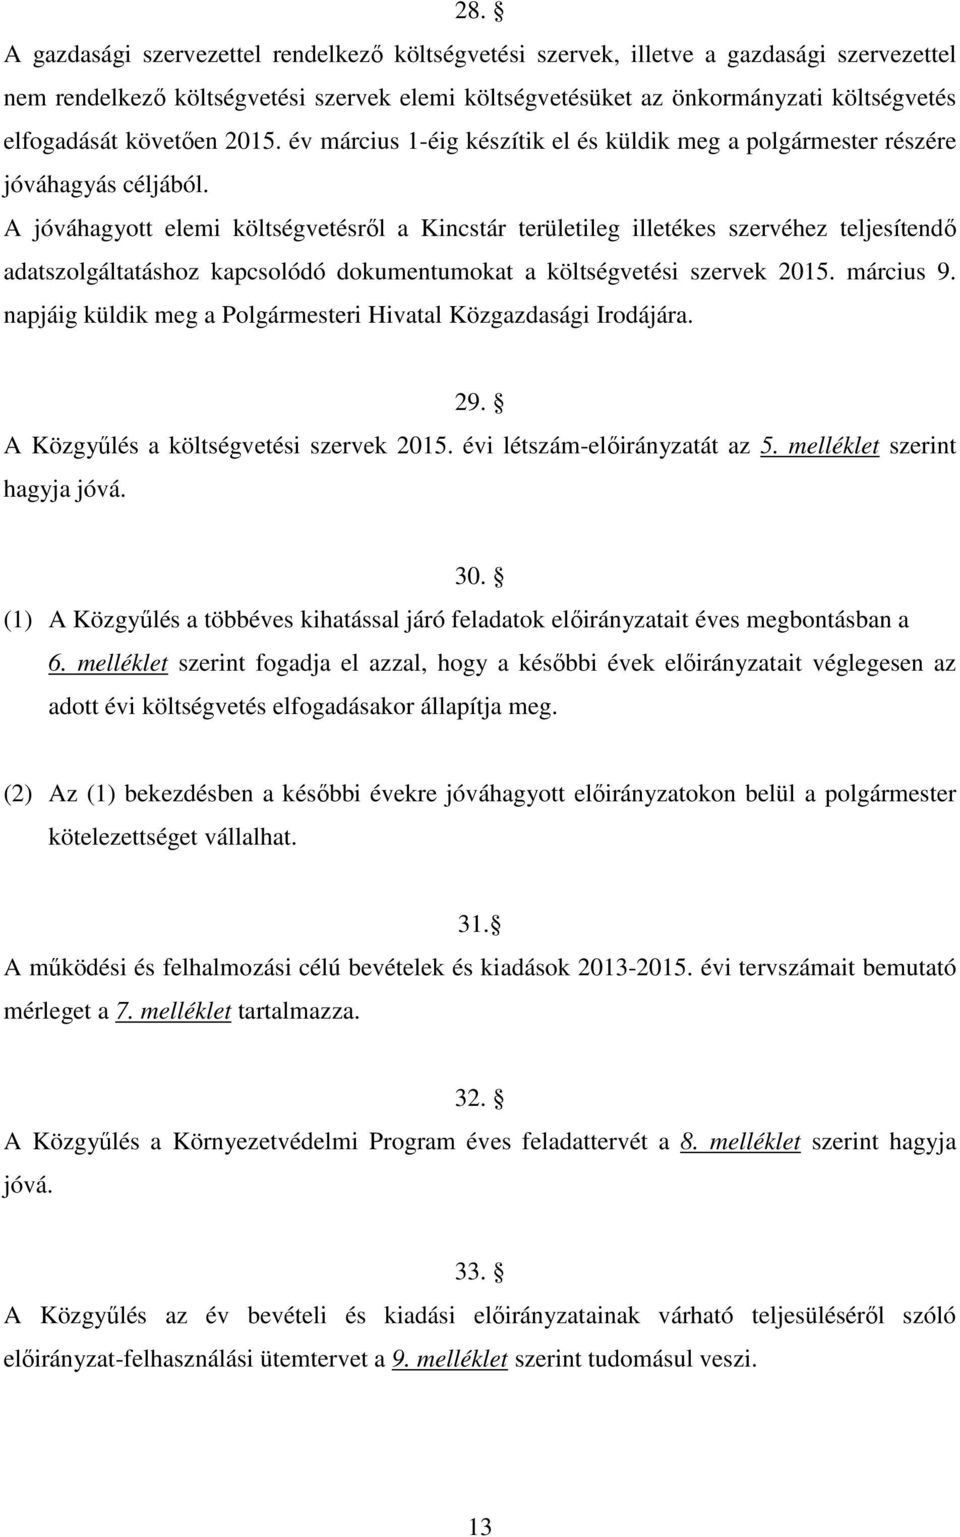 A jóváhagyott elemi költségvetésről a Kincstár területileg illetékes szervéhez teljesítendő adatszolgáltatáshoz kapcsolódó dokumentumokat a költségvetési szervek 2015. március 9.